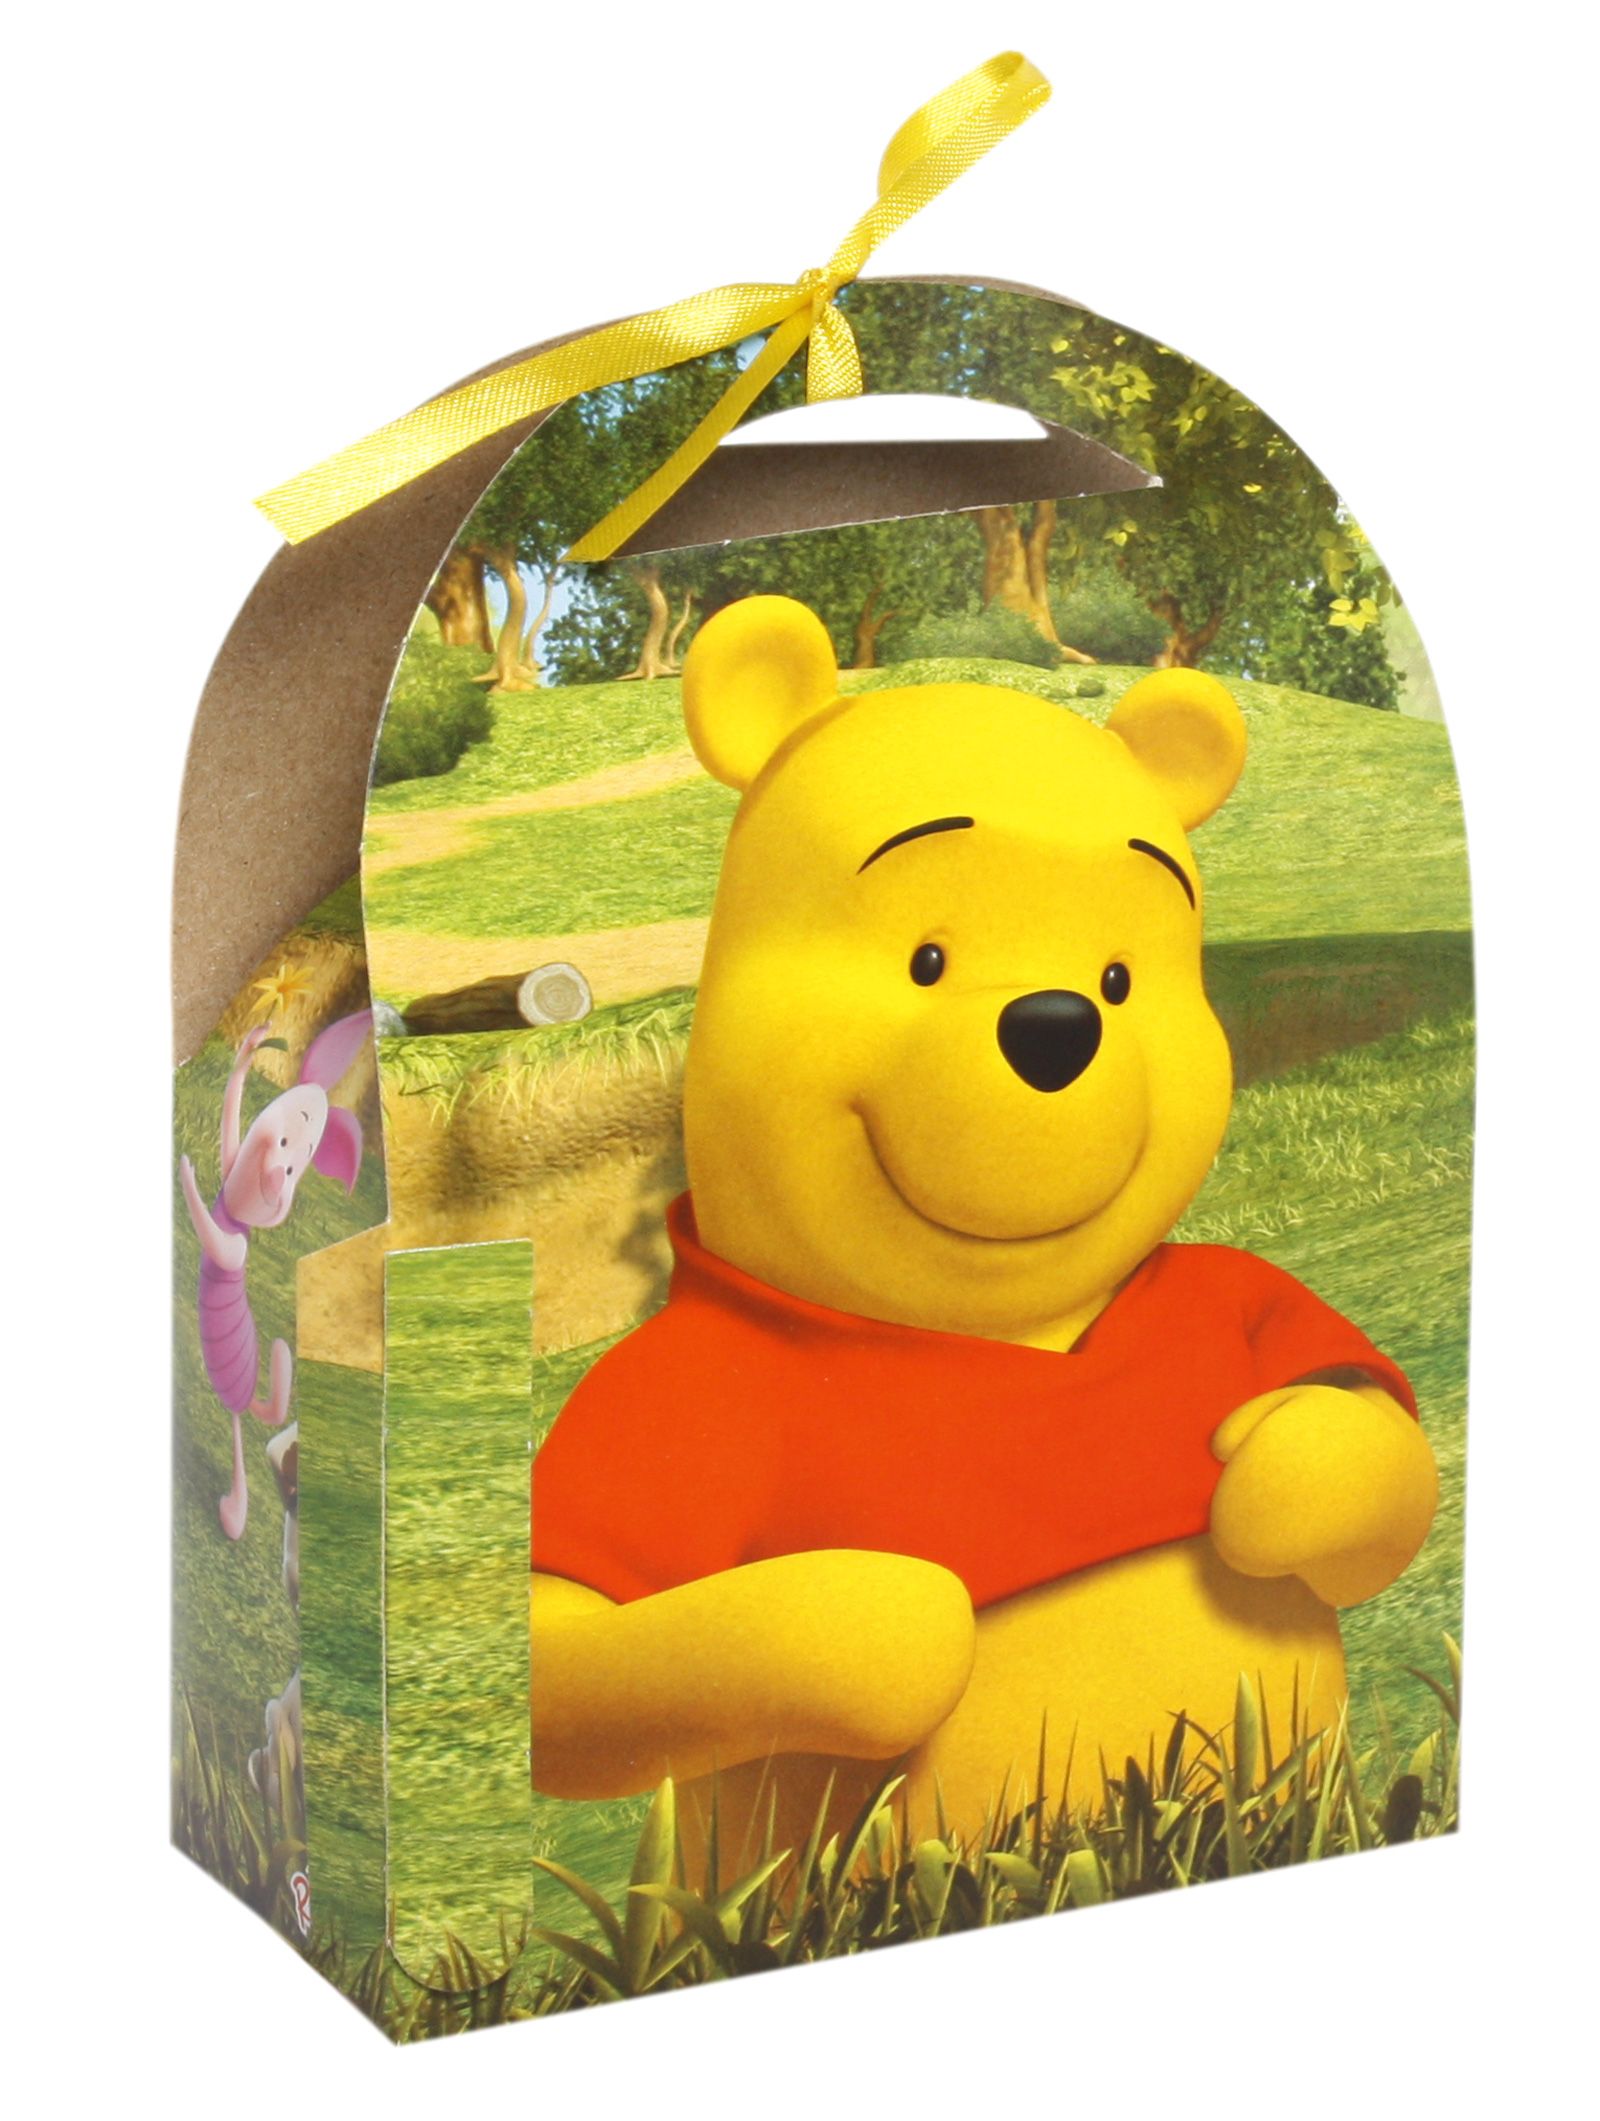 Disney Winnie the Pooh - Treat Box